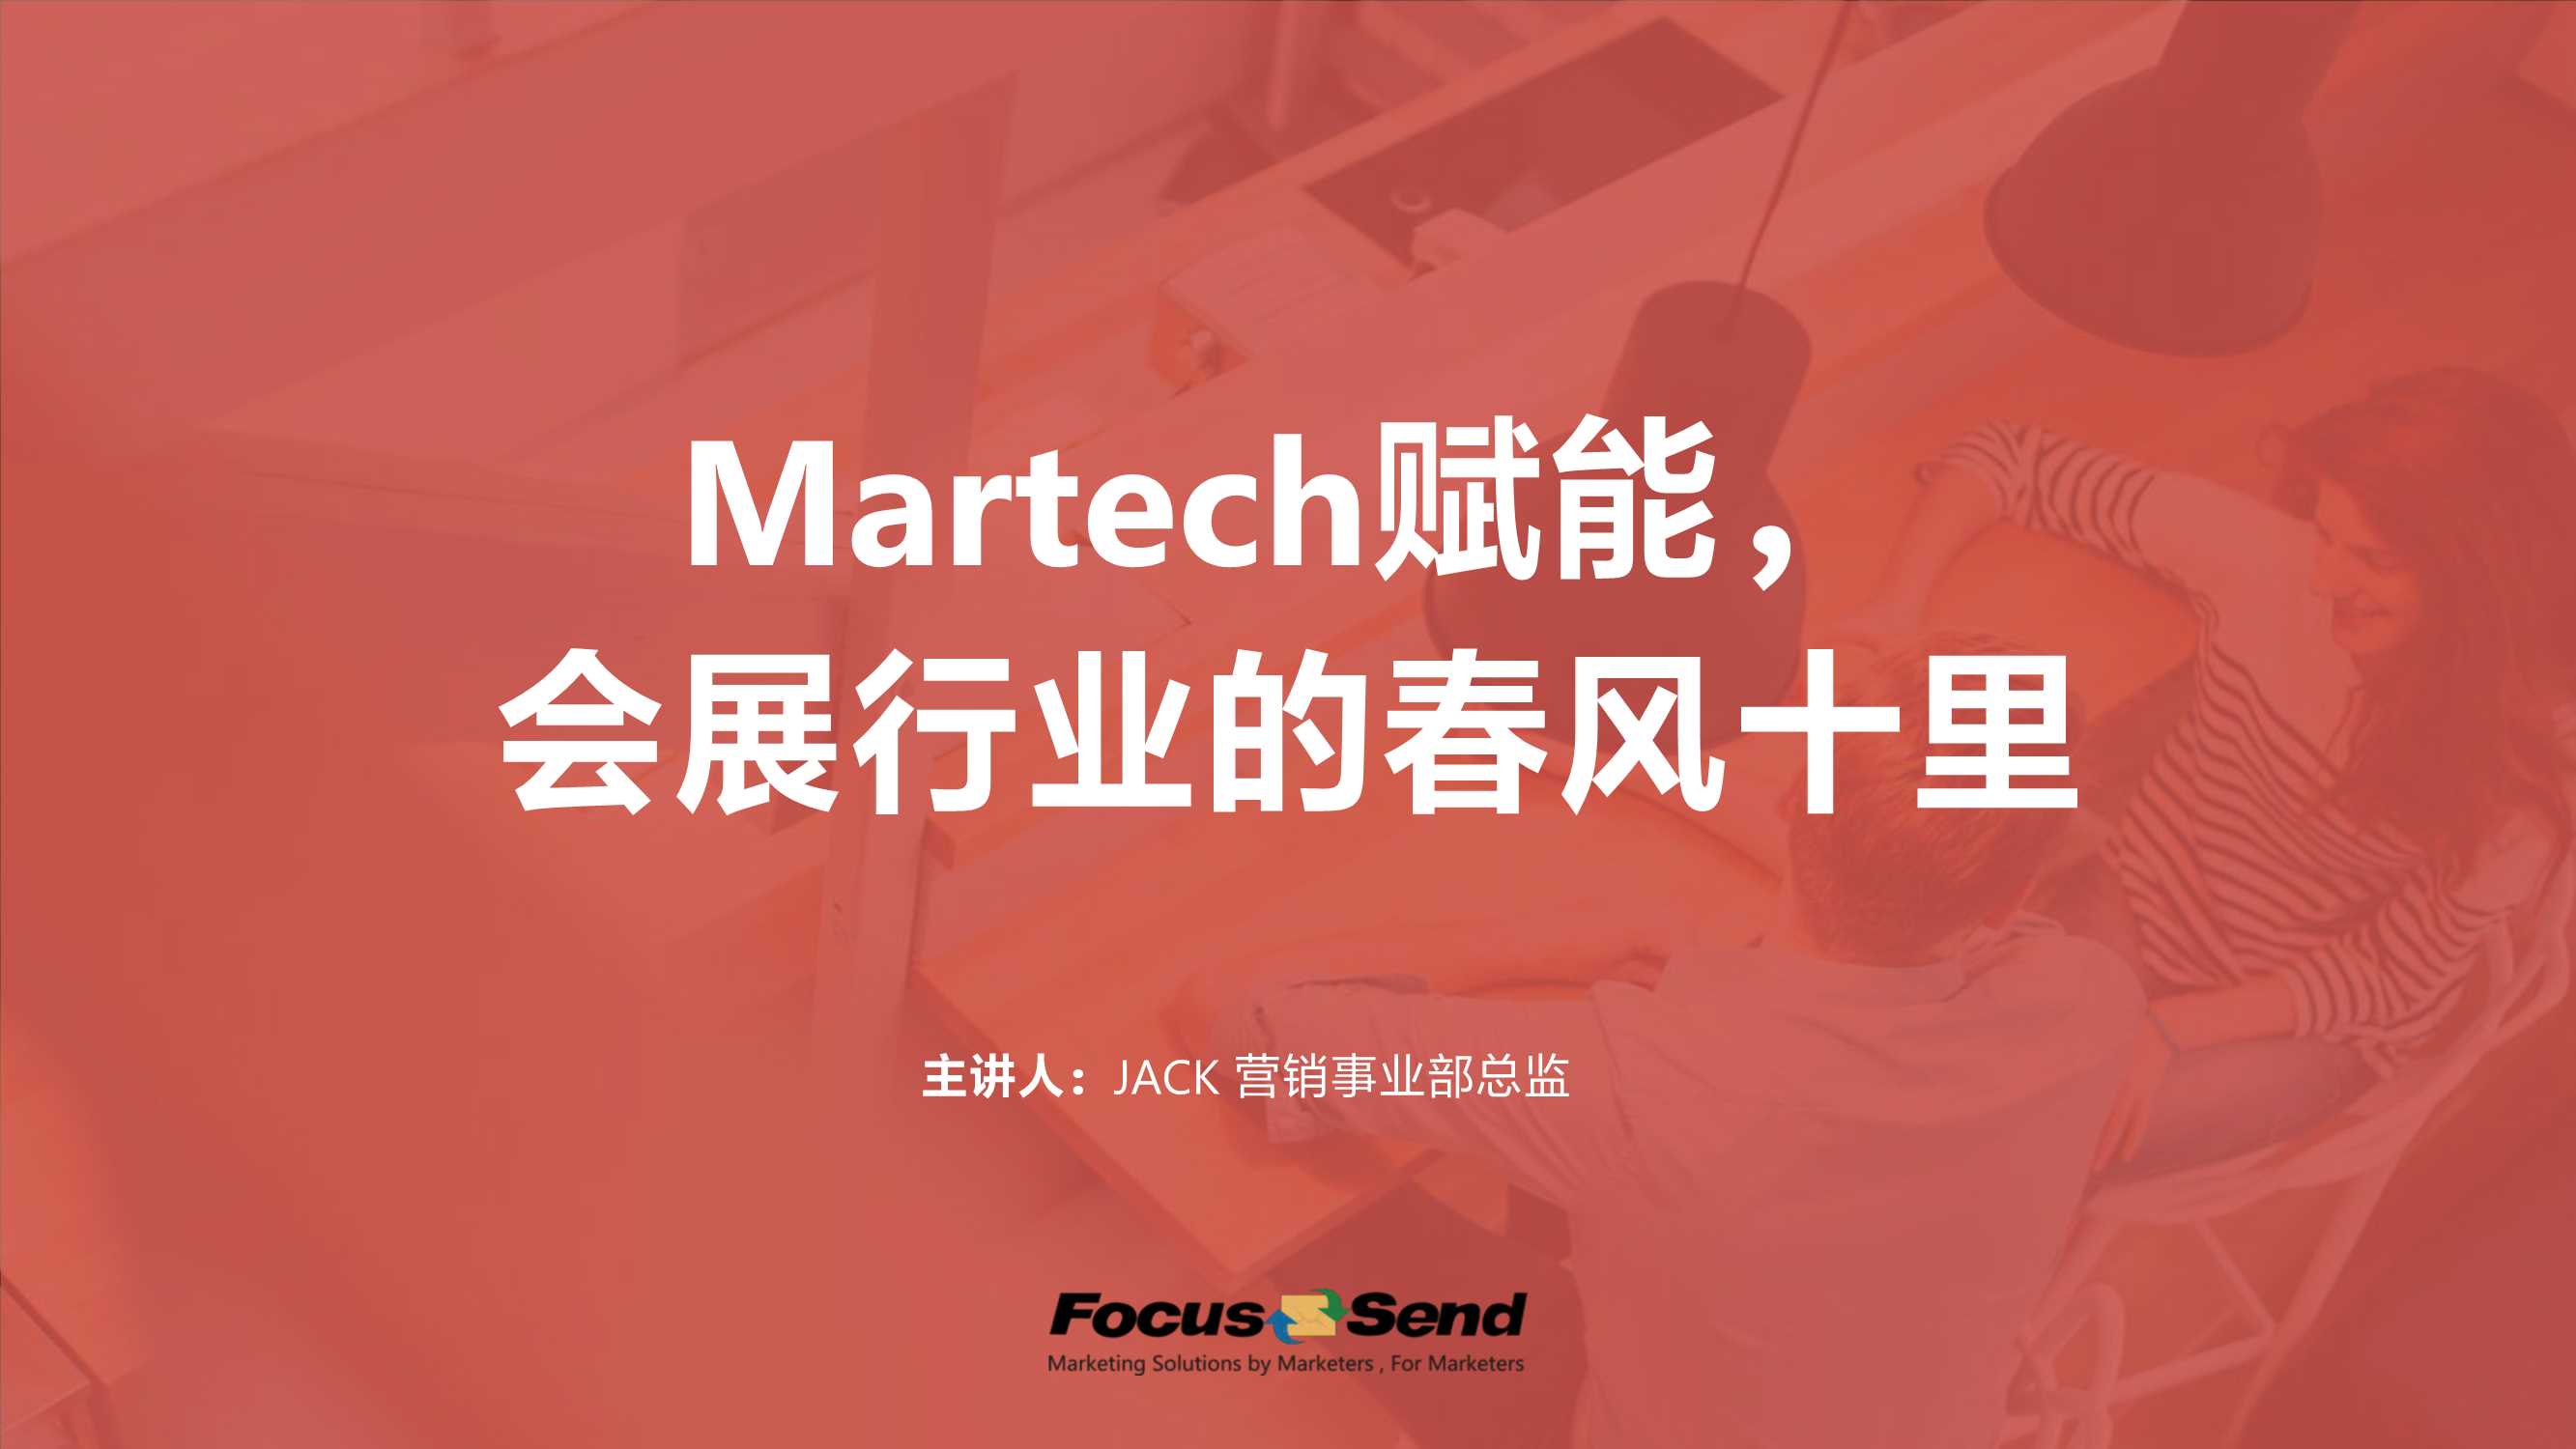 Focus Send-在线直播Martech赋能会展行业的春风十里-2021.06-26页